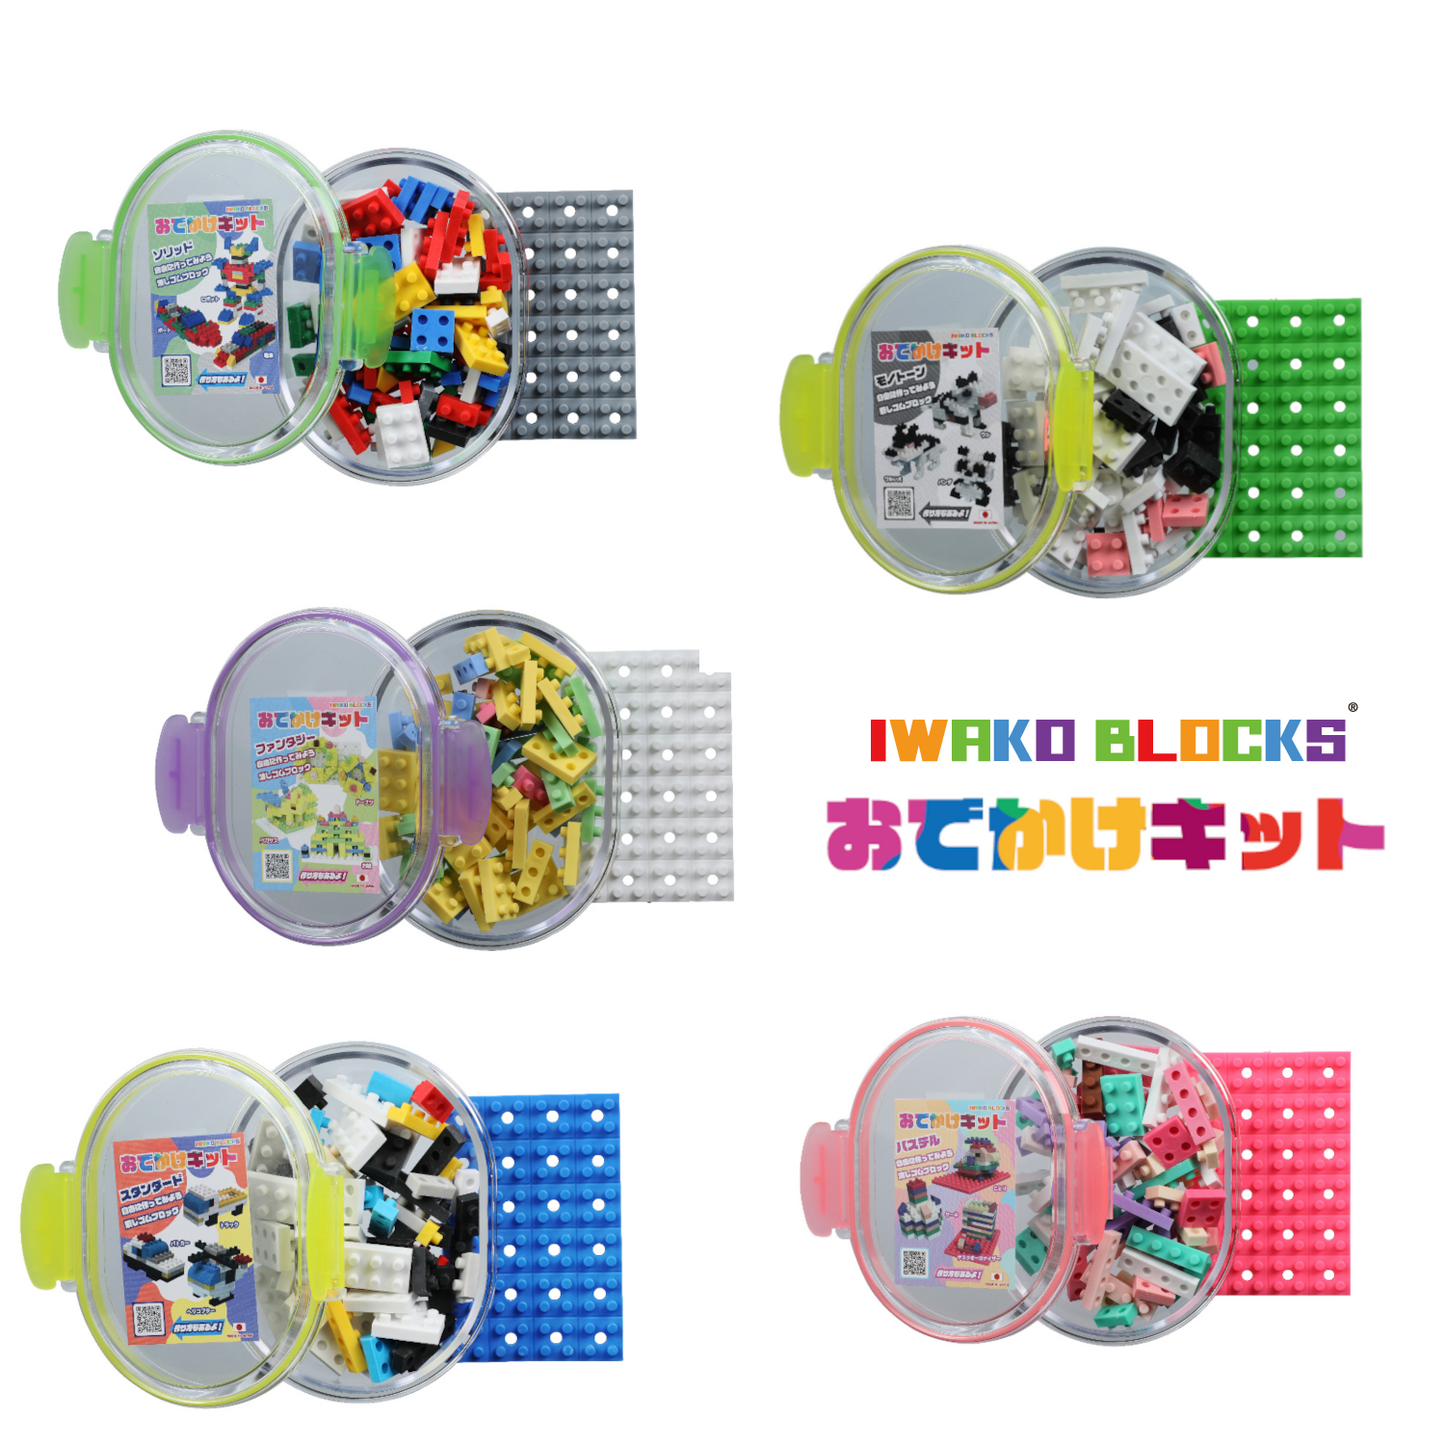 IWAKO BLOCKS "Odekake Kit" x 3 boxes